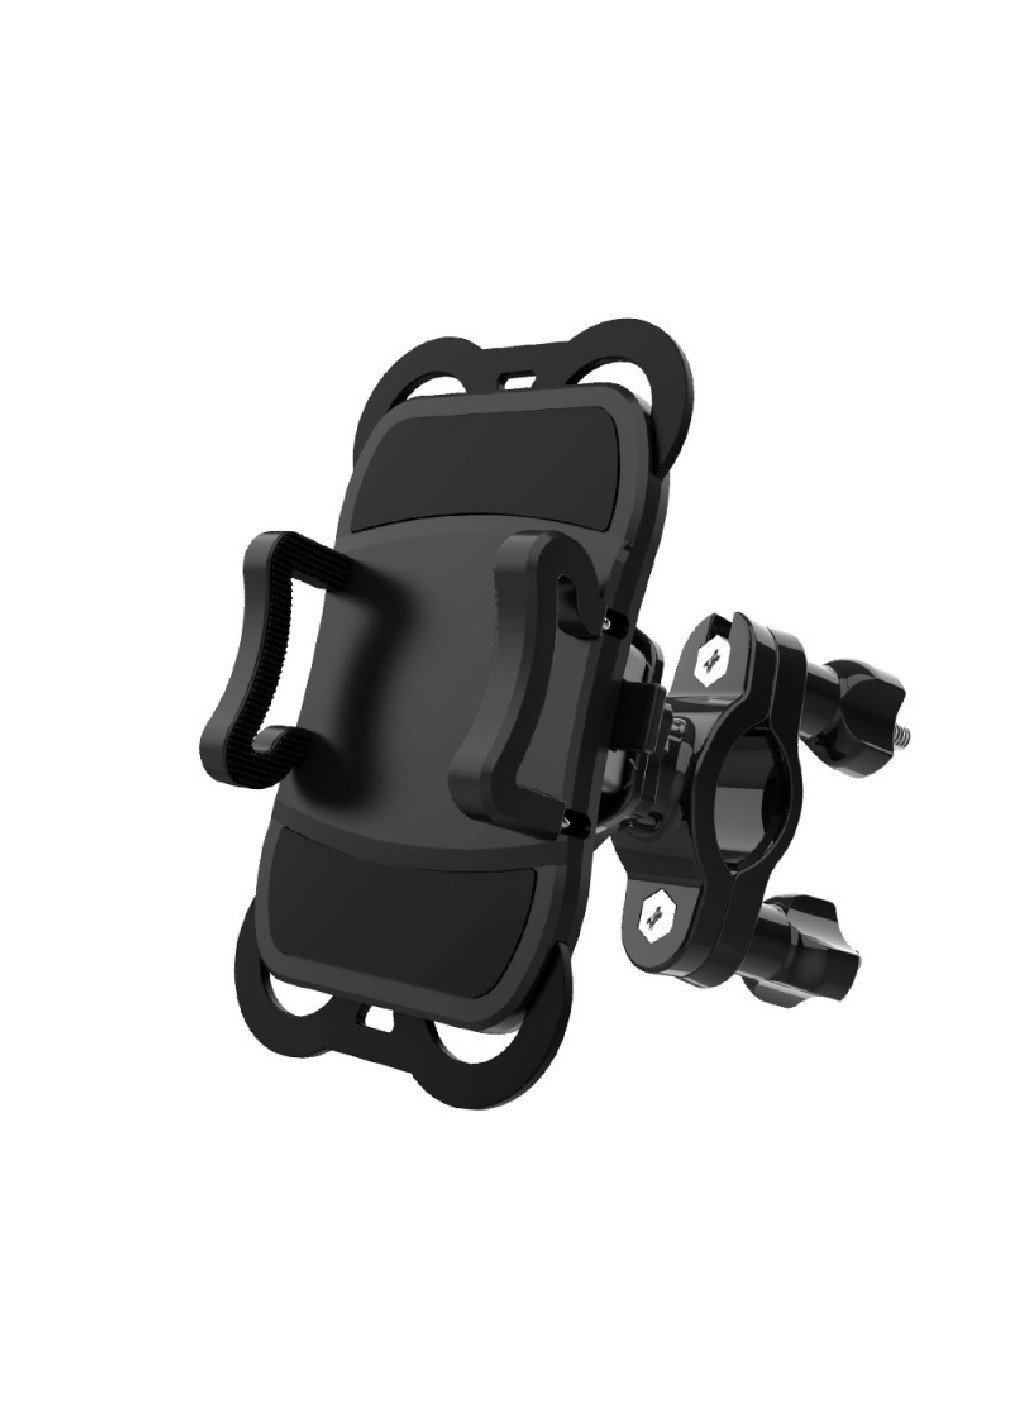 Крепление держатель Telesin на руль мотоцикла, скутера, велосипеда для экшн-камеры телефона комплект (474045-Prob) Черный Unbranded (257225841)